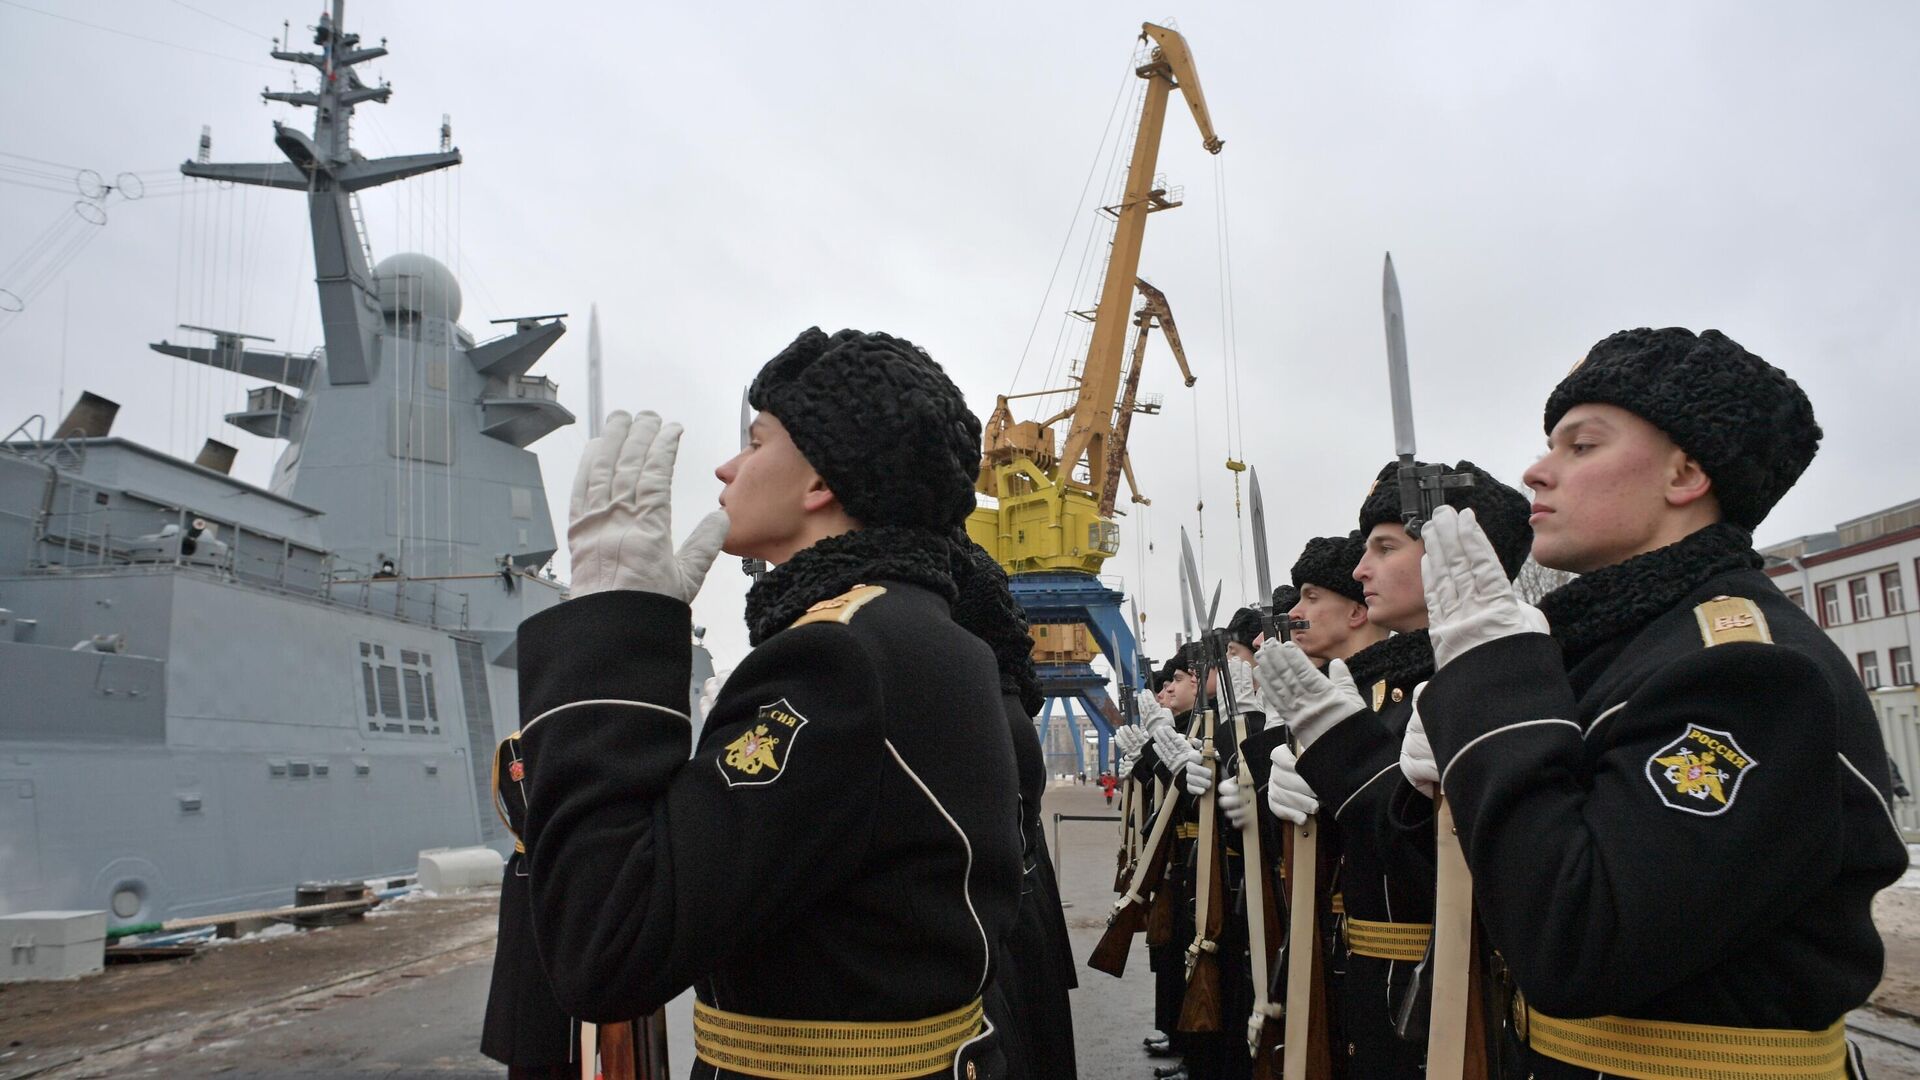 Военнослужащие во время церемонии поднятия Военно-морского флага на корвете Гремящий в Санкт-Петербурге - РИА Новости, 1920, 29.12.2020